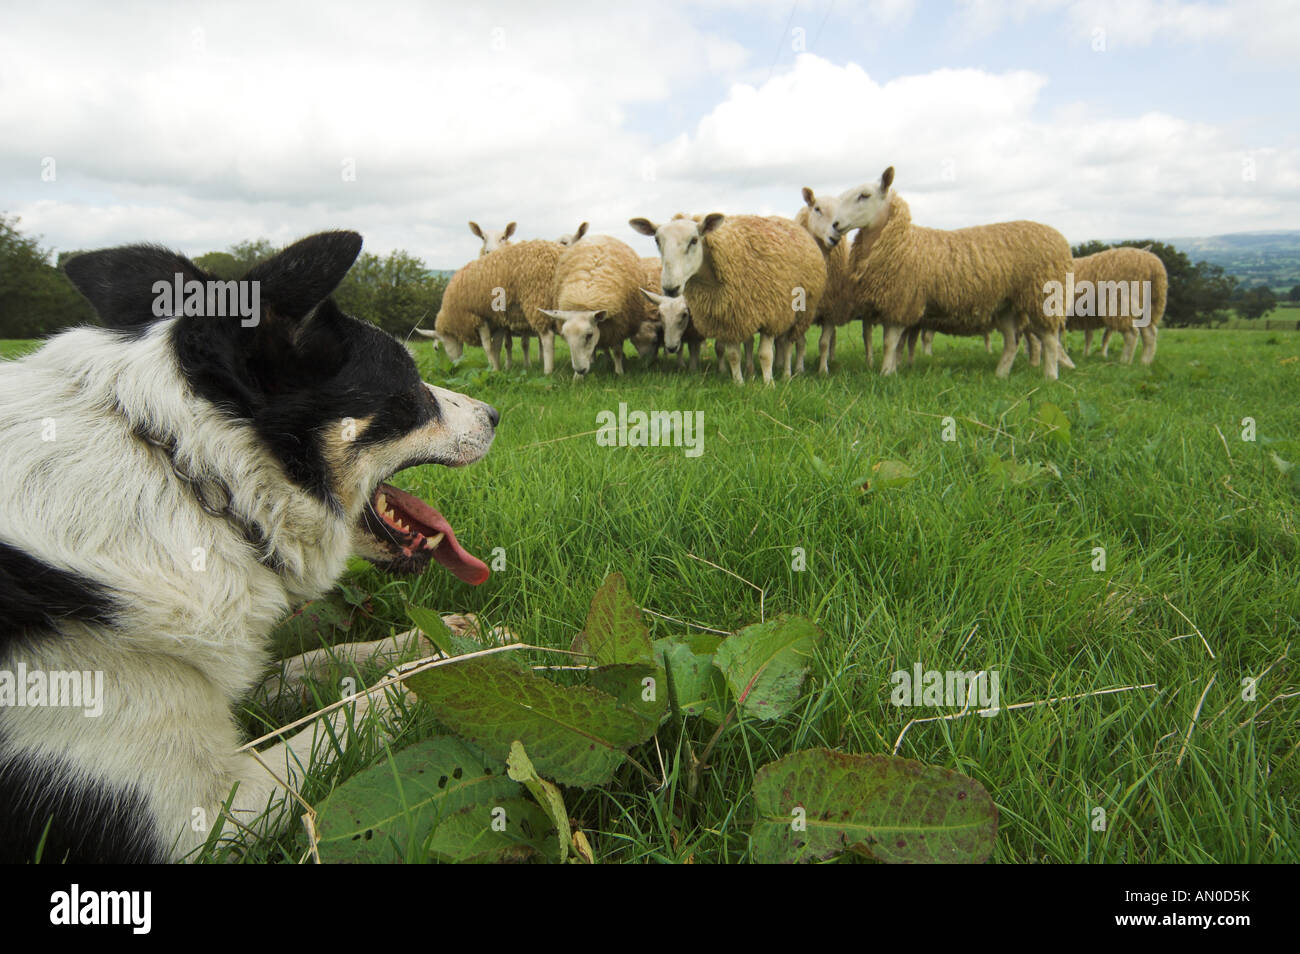 Sheepdog watching sheep in field Stock Photo